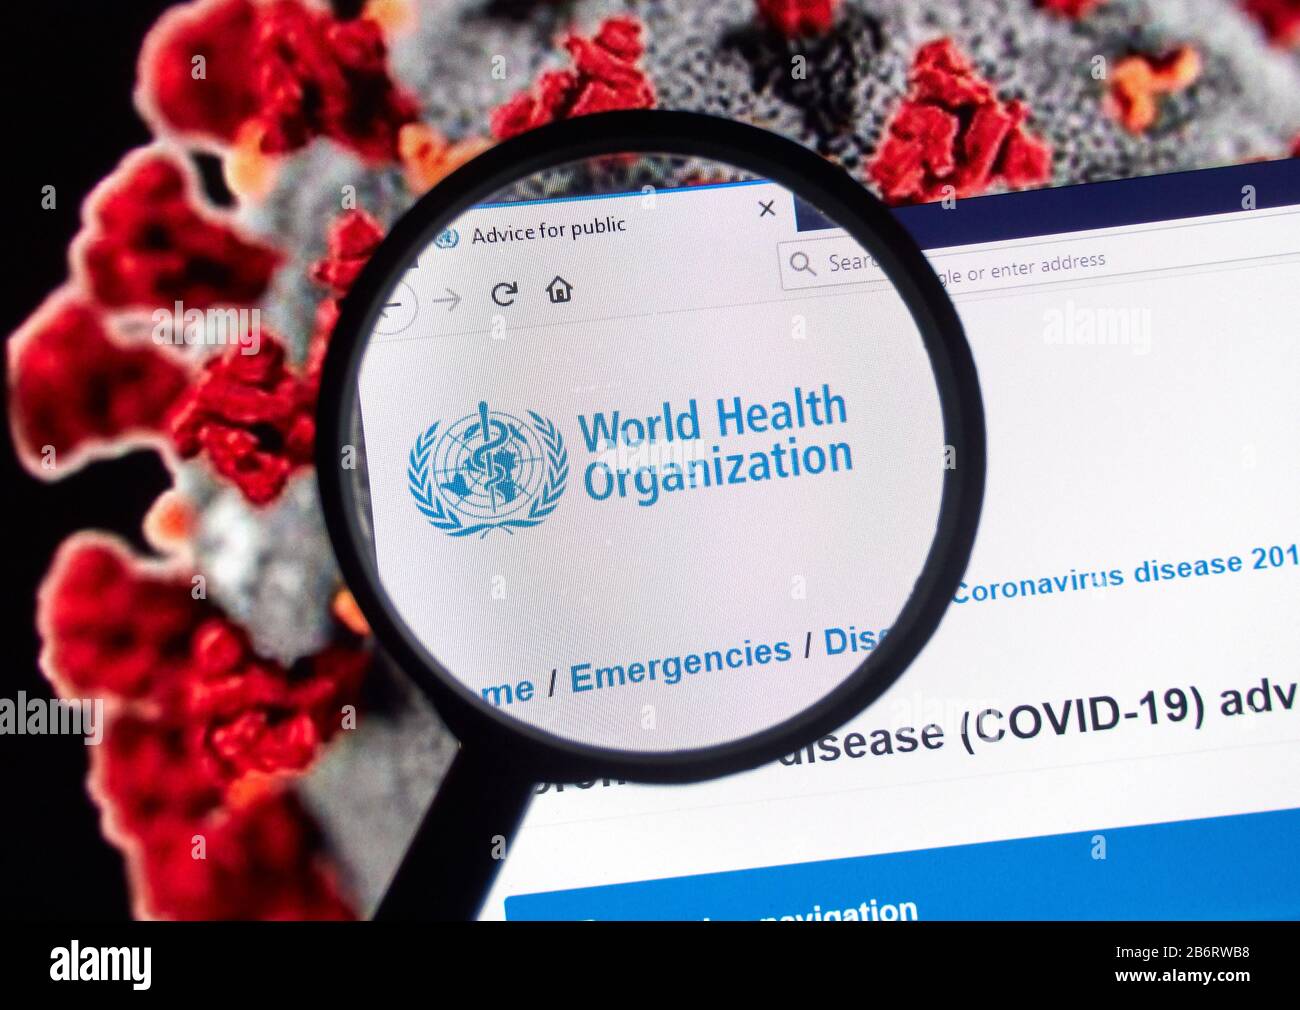 Montreal, Canadá - 11 de marzo de 2020: Logotipo de la Organización Mundial de la Salud sobre imagen de Coronavirus. Enfermedad de coronavirus 2019 COVID-19 es una enfermedad infecciosa Foto de stock